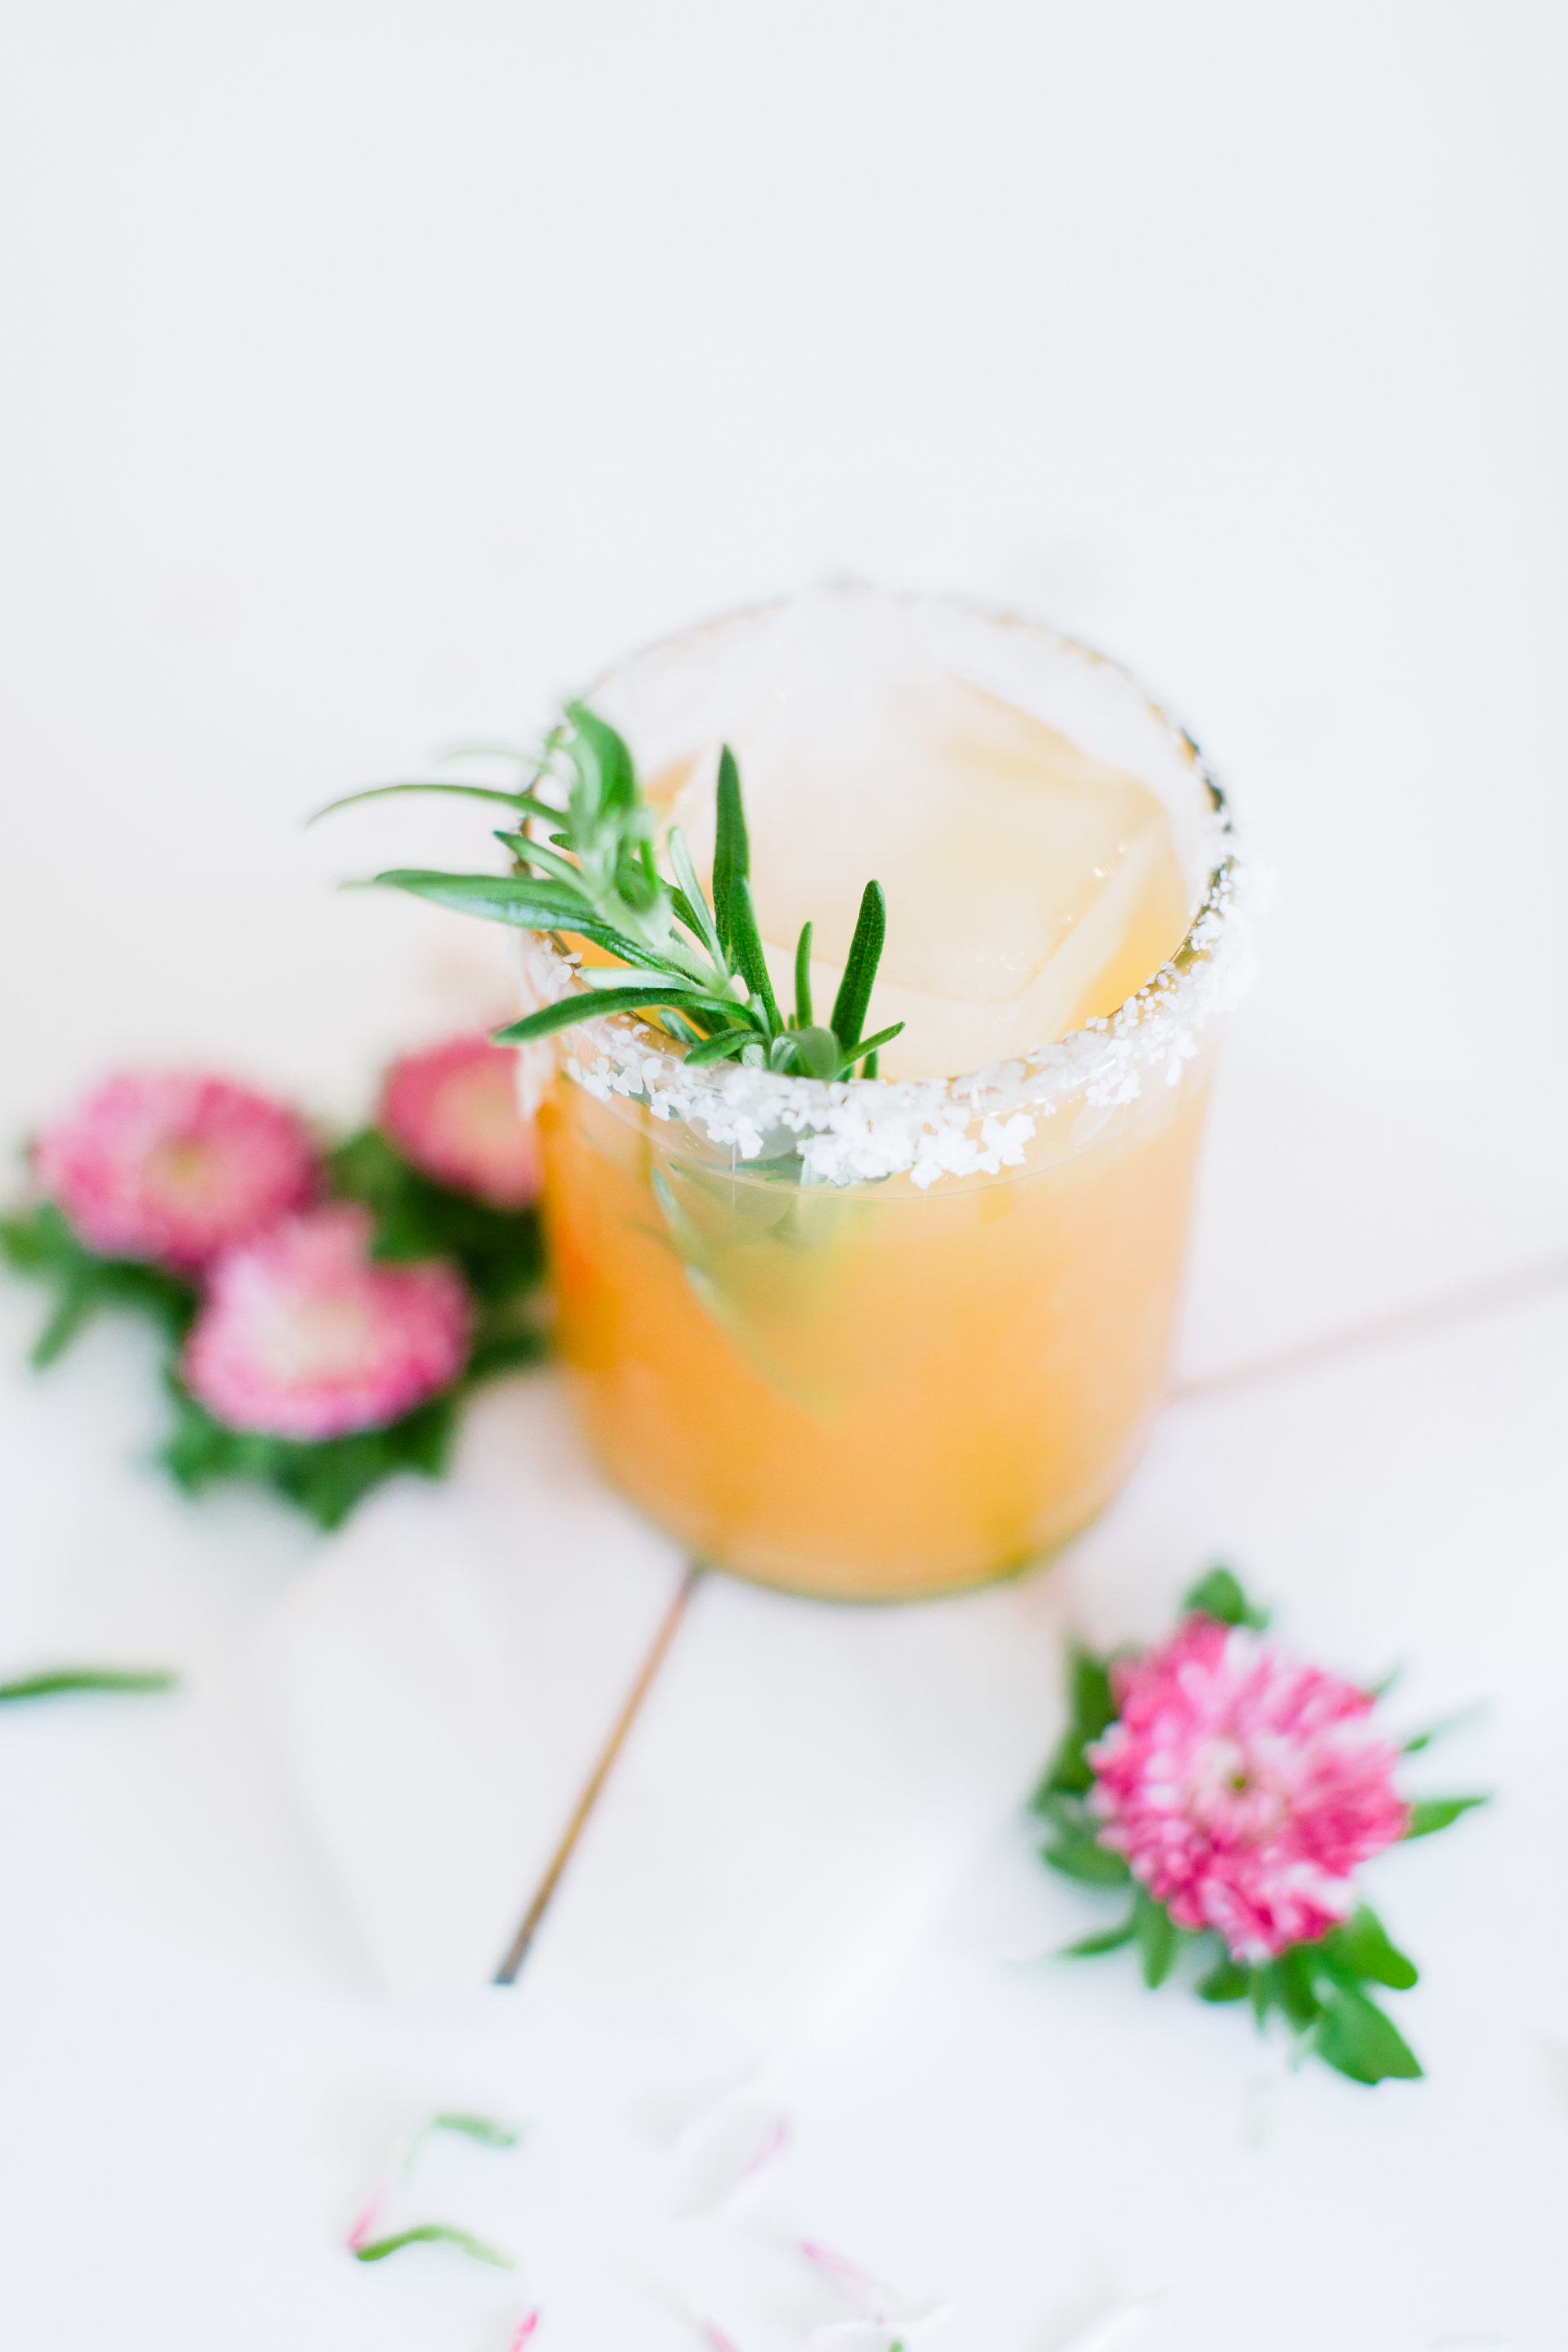 Cocktails – Rosemary Ginger Margarita